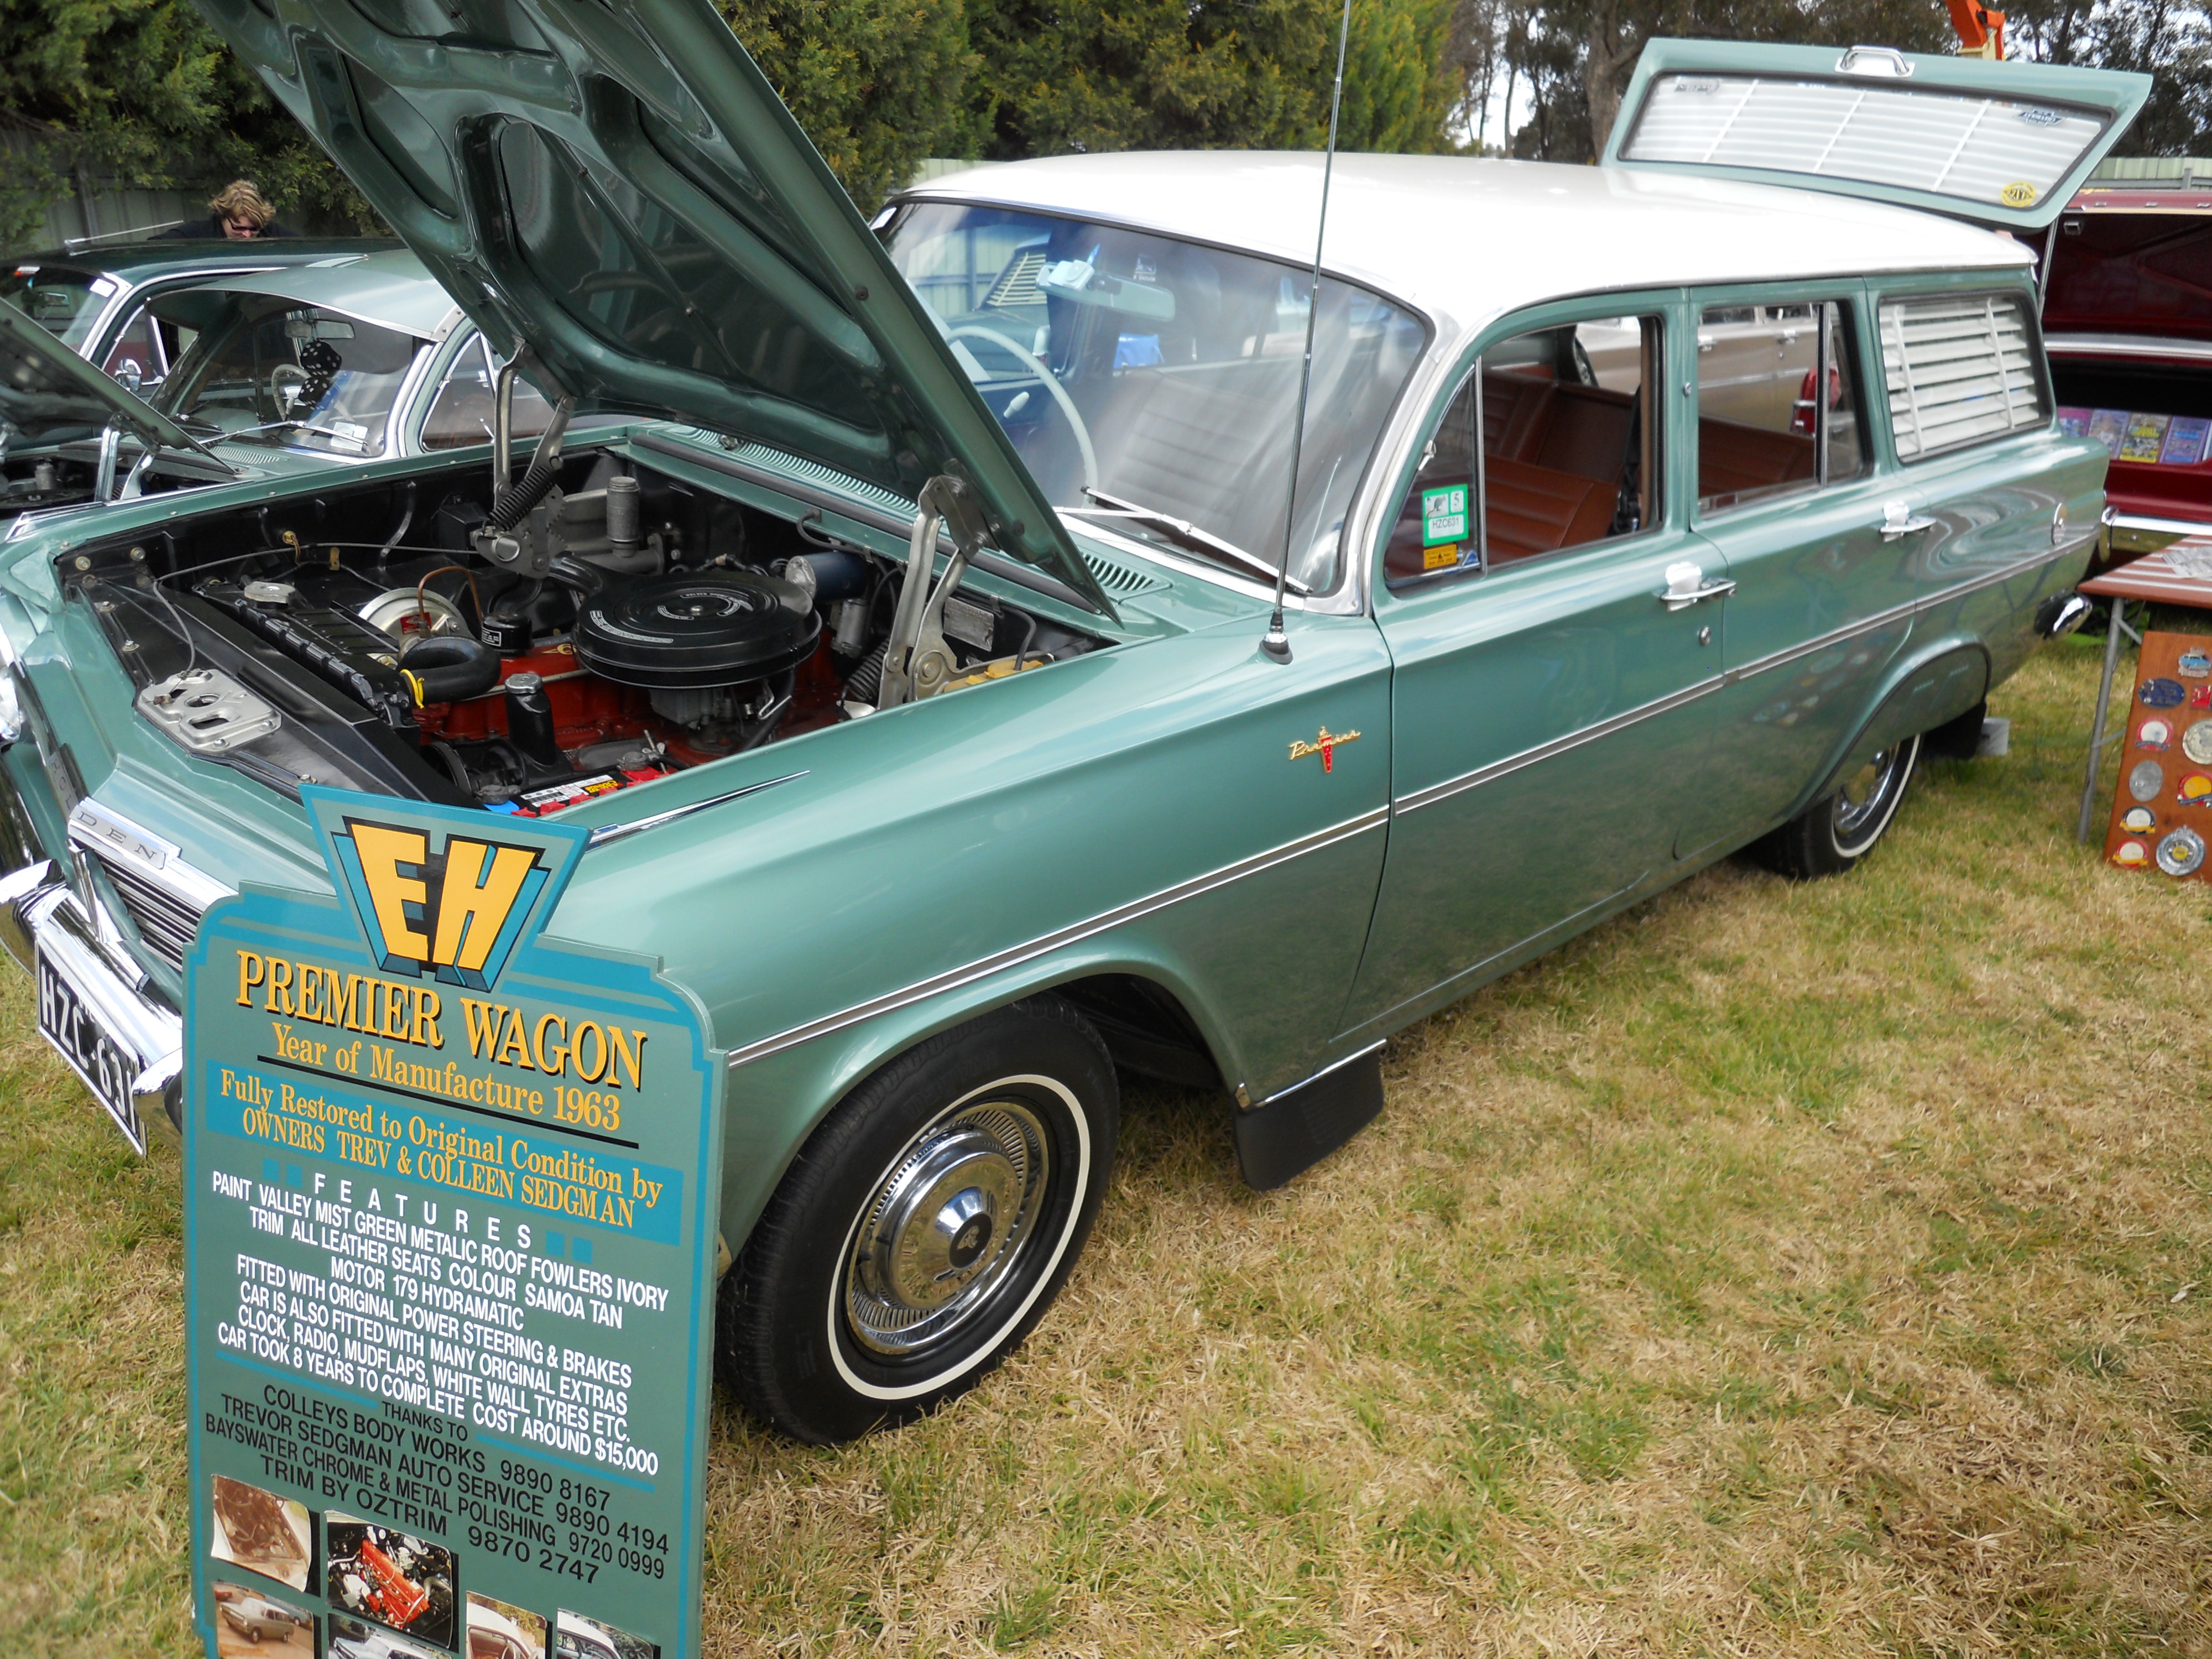 1963 EH Holden Premier Wagon | Flickr - Partage de photos!